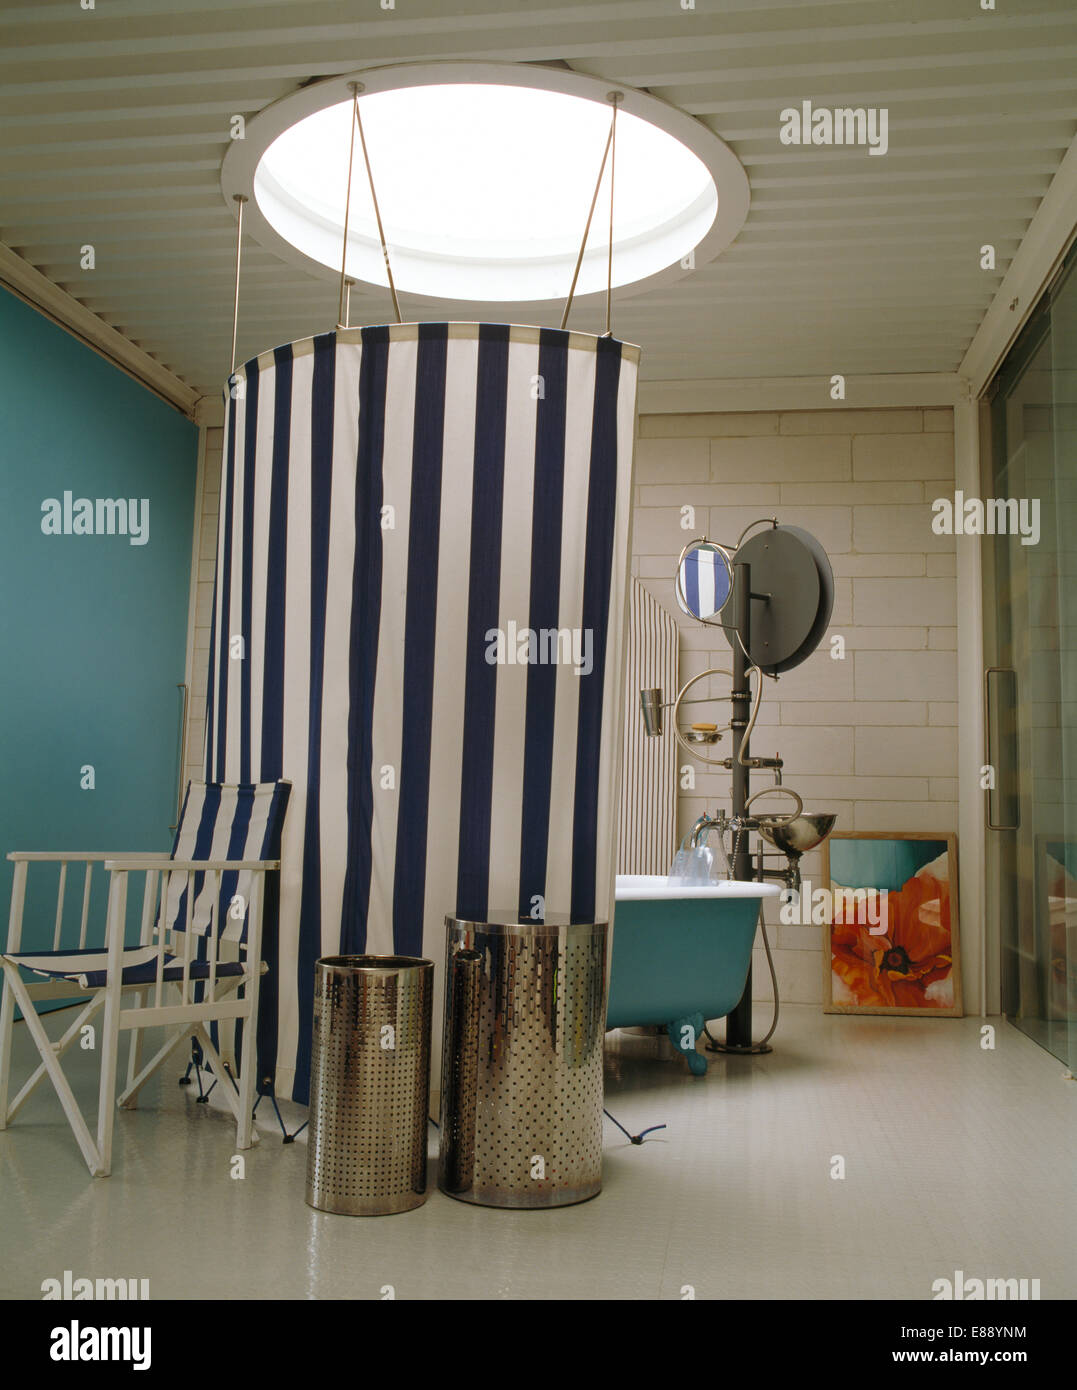 Los recipientes metálicos y silla del director junto a negro+blanco rayado cortina de lona alrededor de ducha en el cuarto de baño moderno Foto de stock